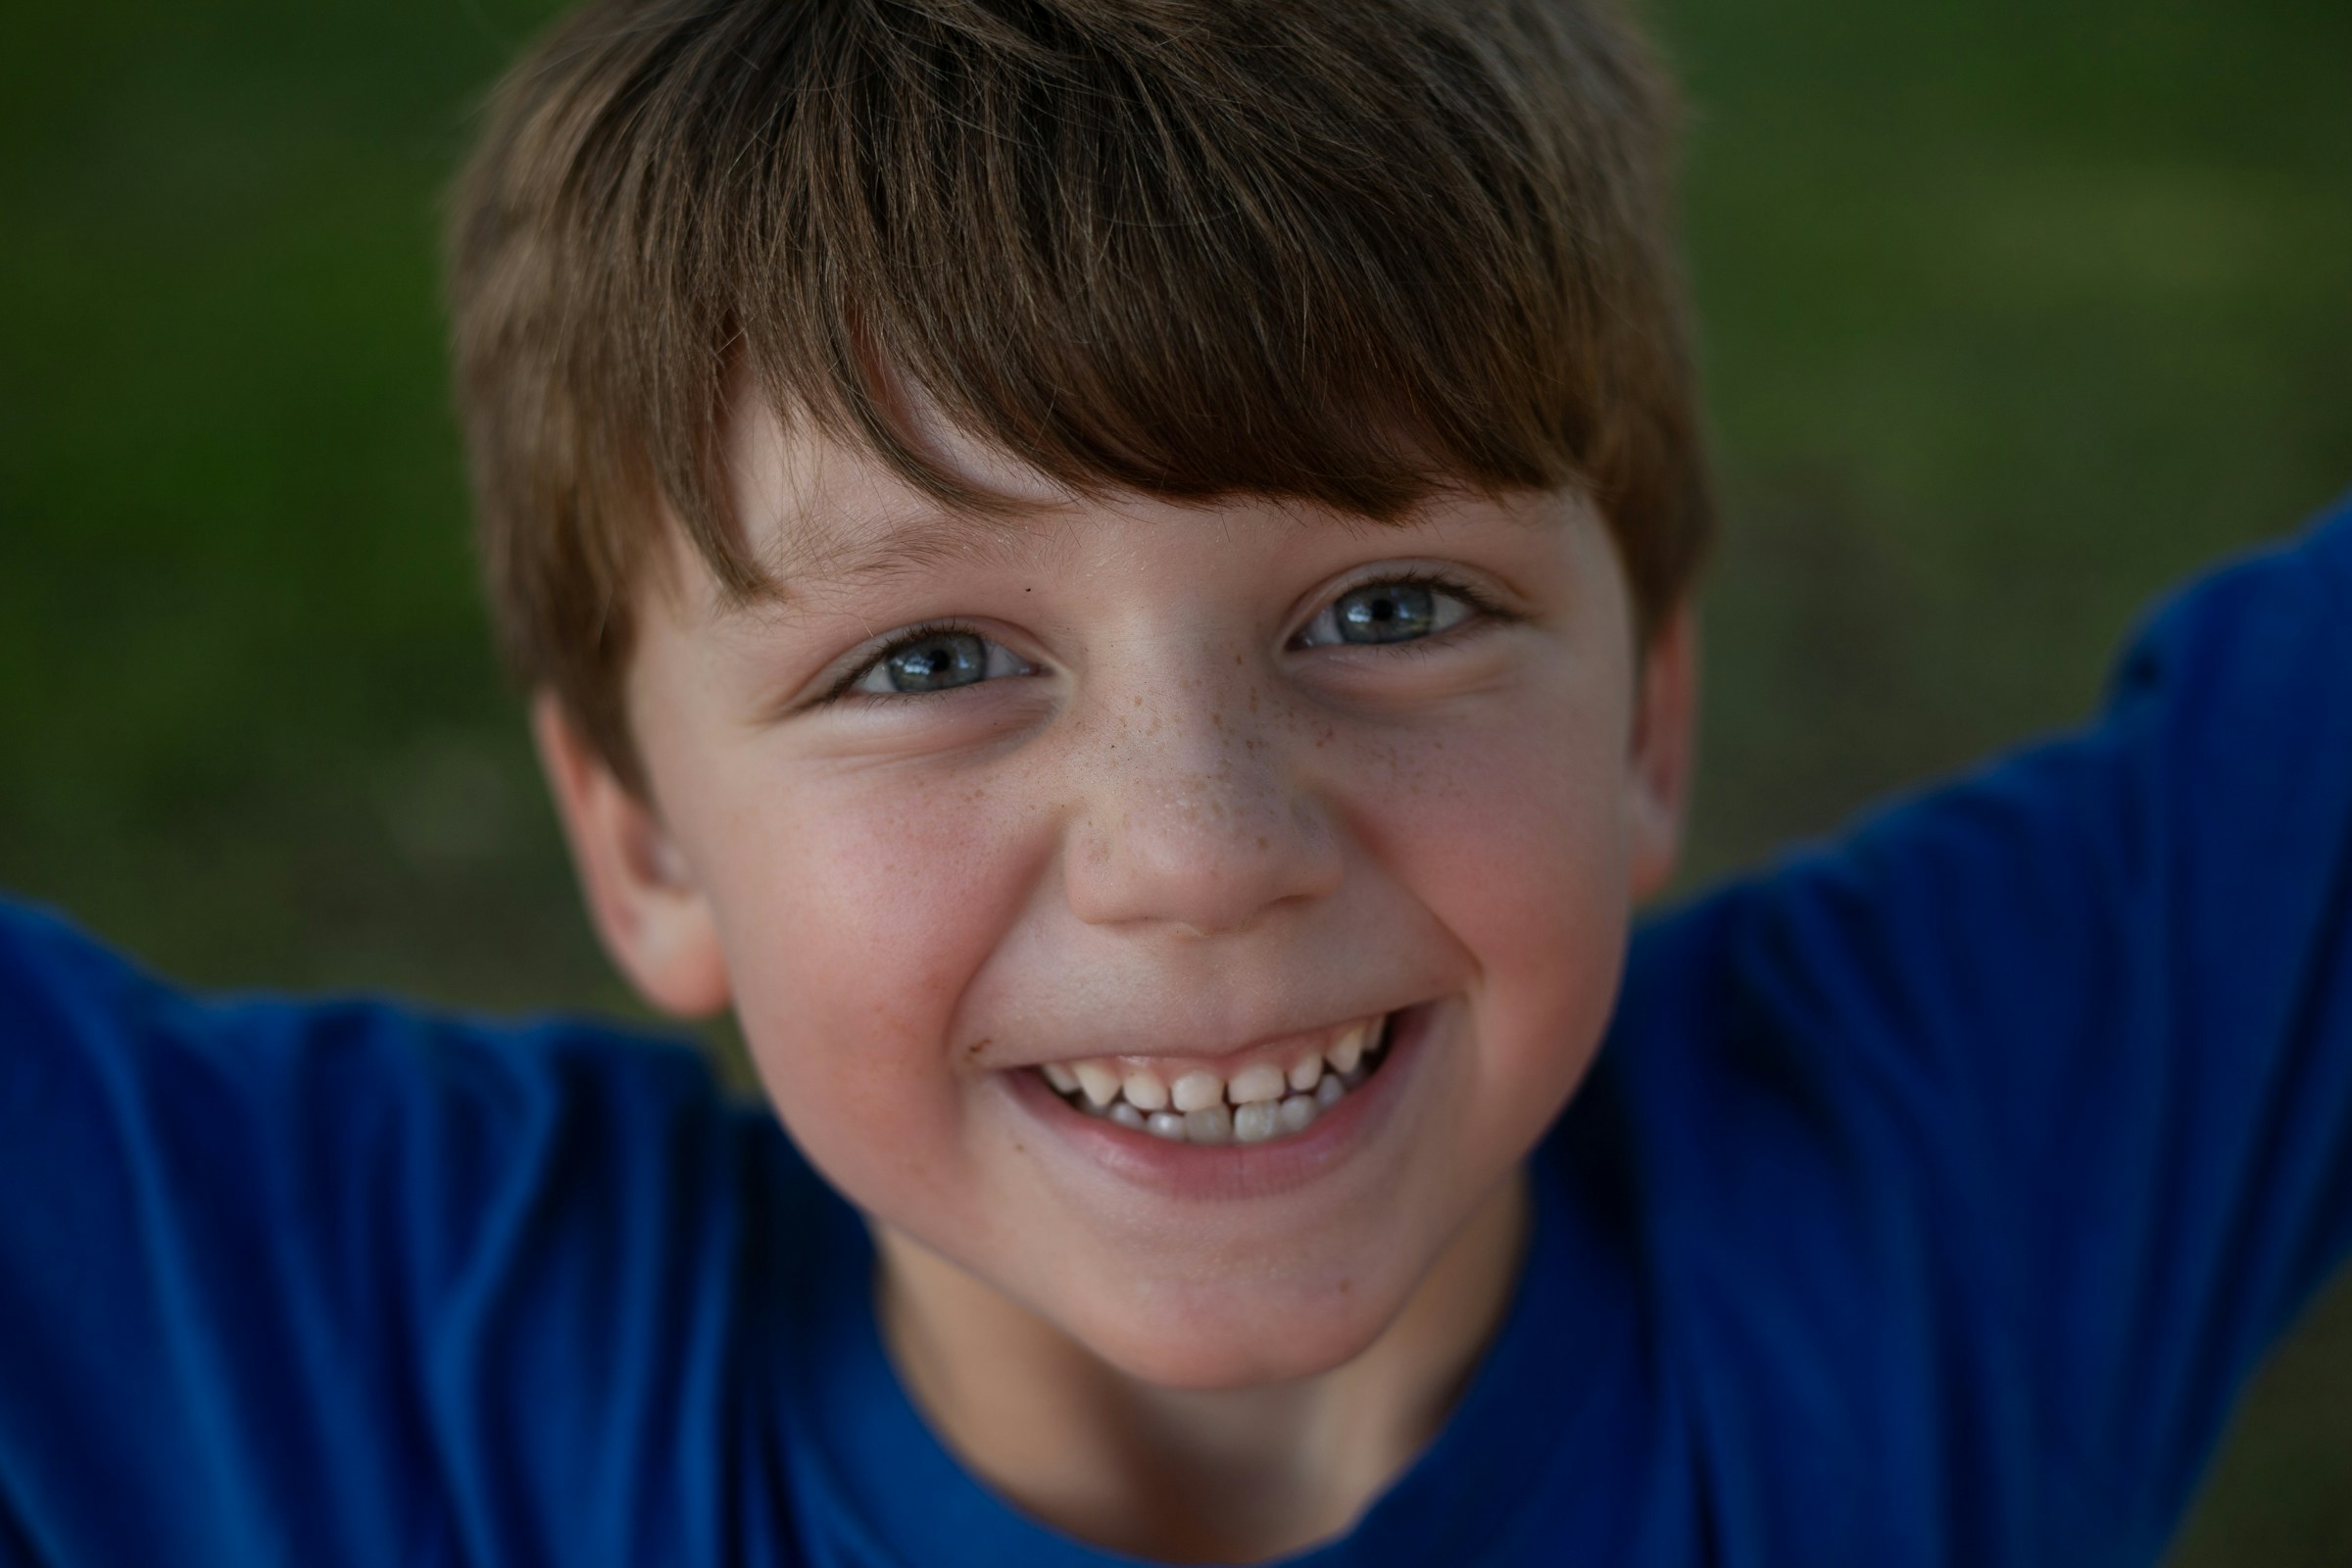 Ein lächelnder kleiner Junge in einem blauen Hemd | Quelle: Unsplash